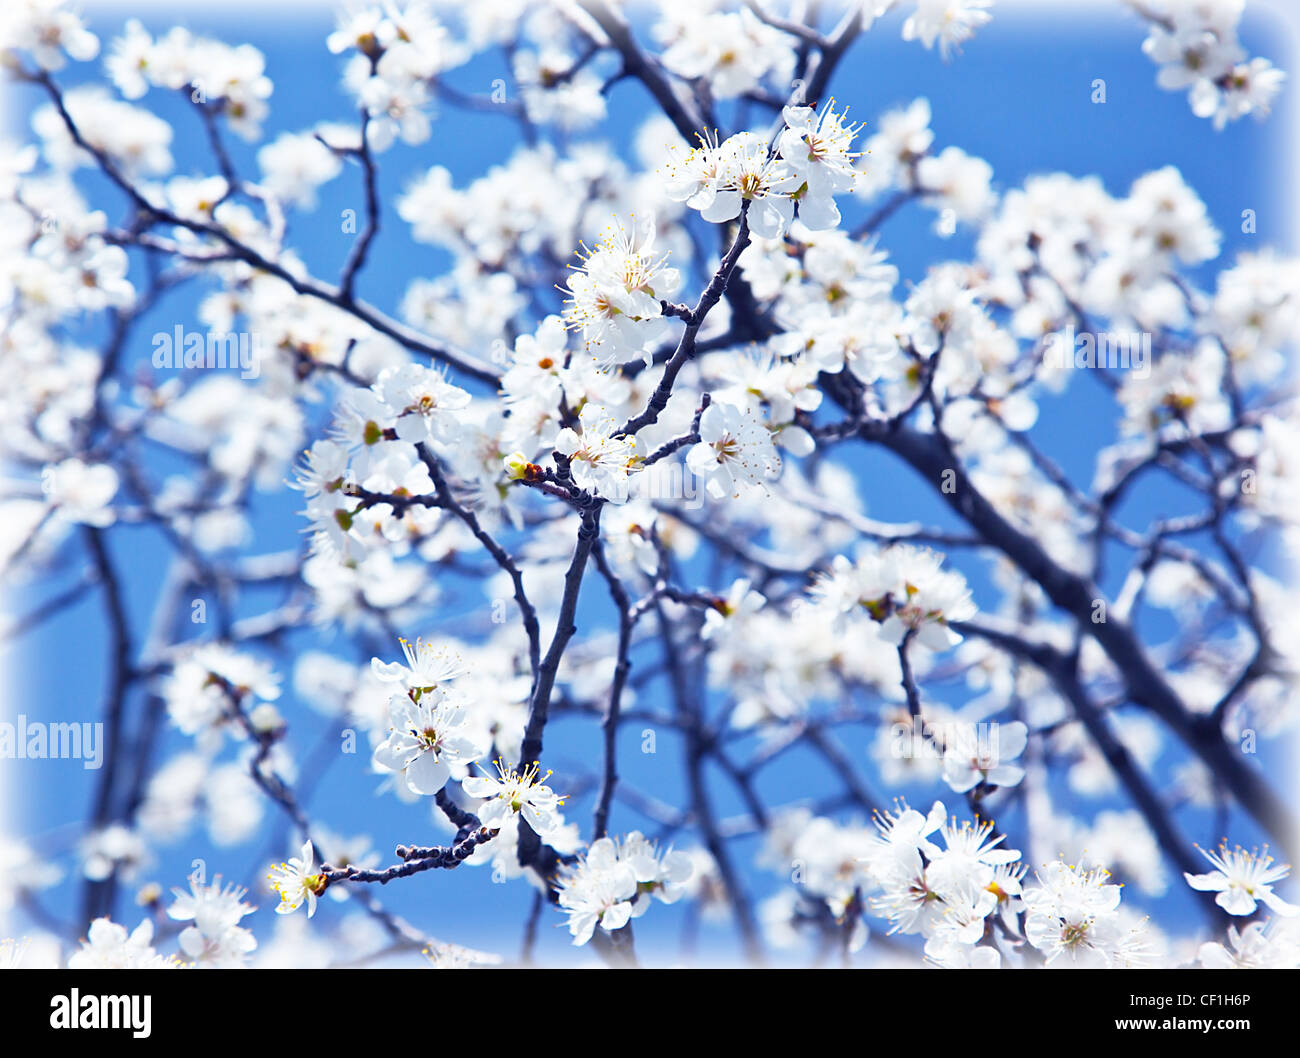 Abstrakte Blumen Hintergrund, blühender Baum im Frühjahr, frische weiße Blumen auf dem Zweig der Obstbaum, Pflanzen blühen, saisonale Stockfoto